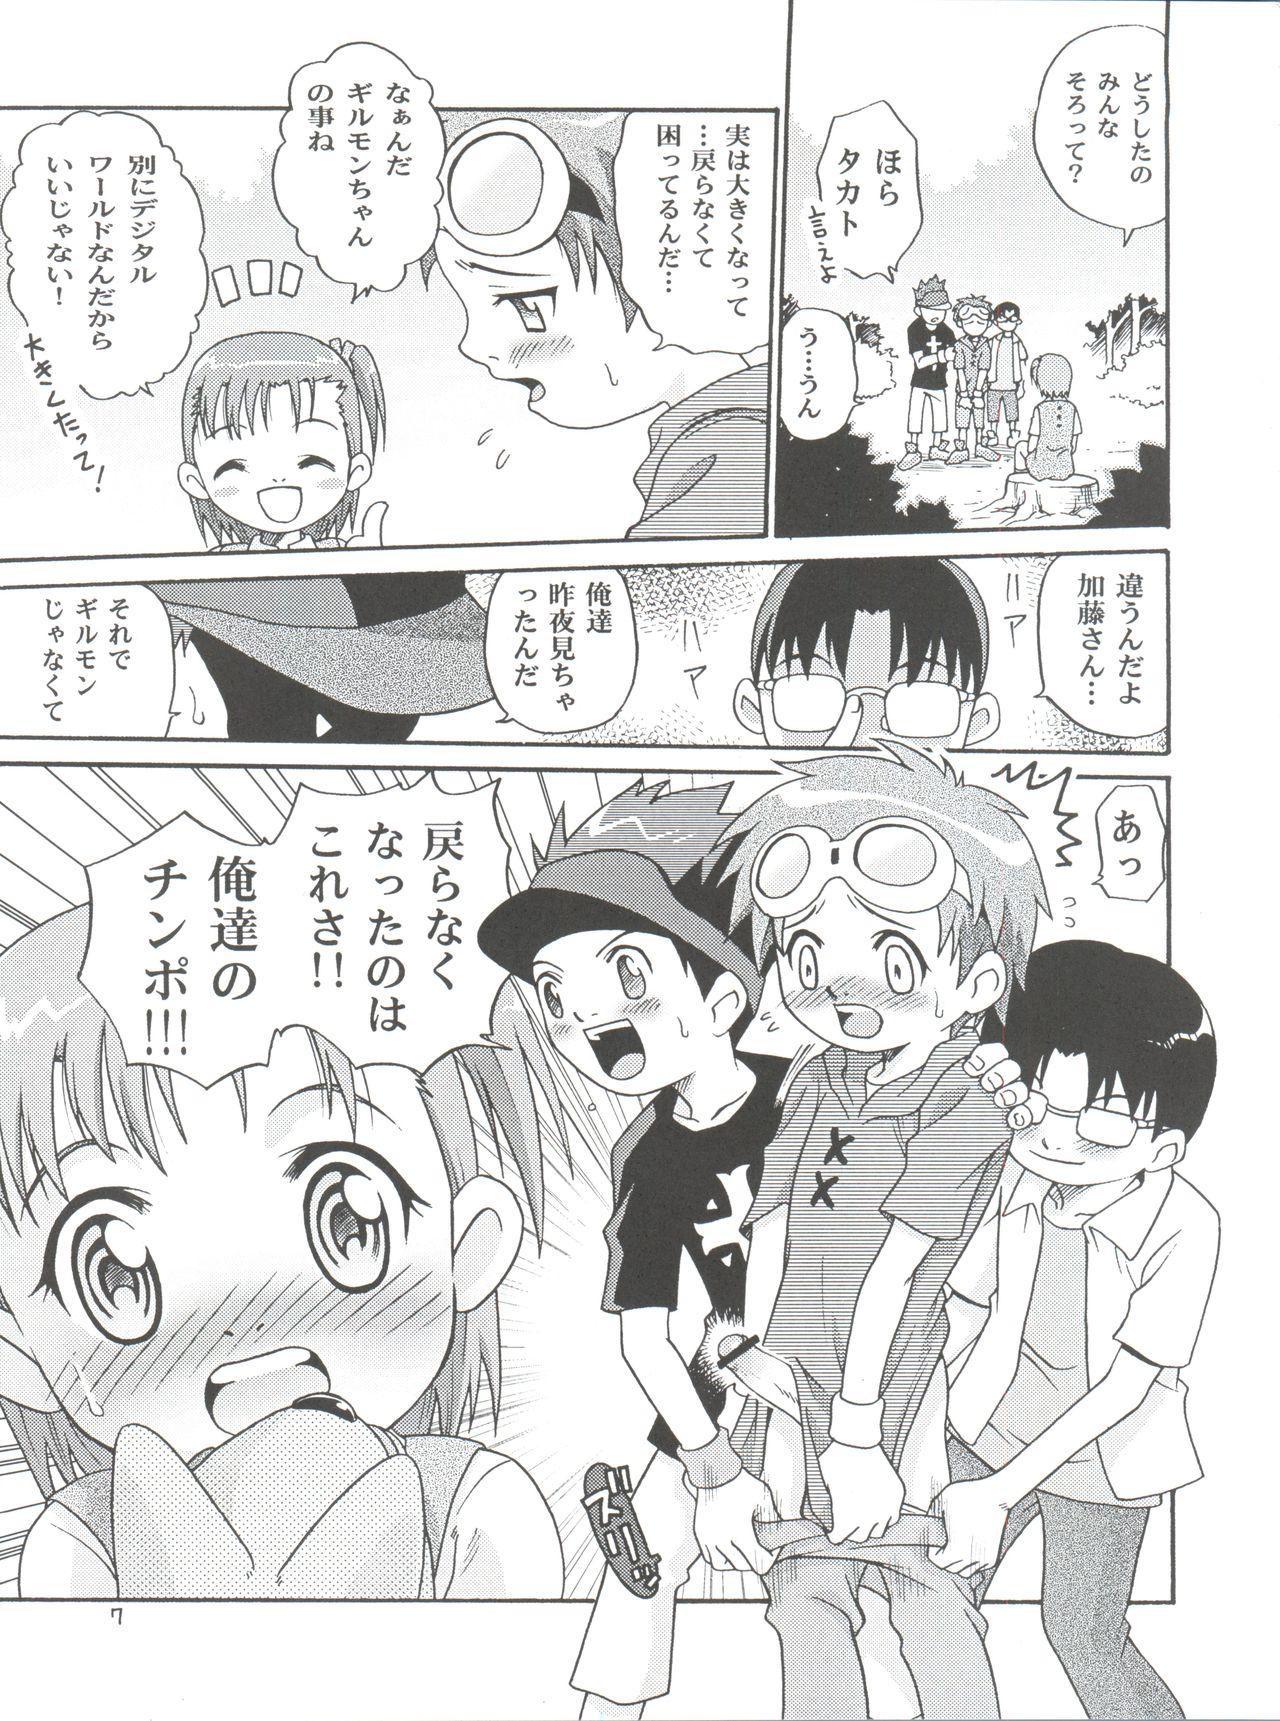 Compilation Takato Ijiri - Digimon tamers Com - Page 7